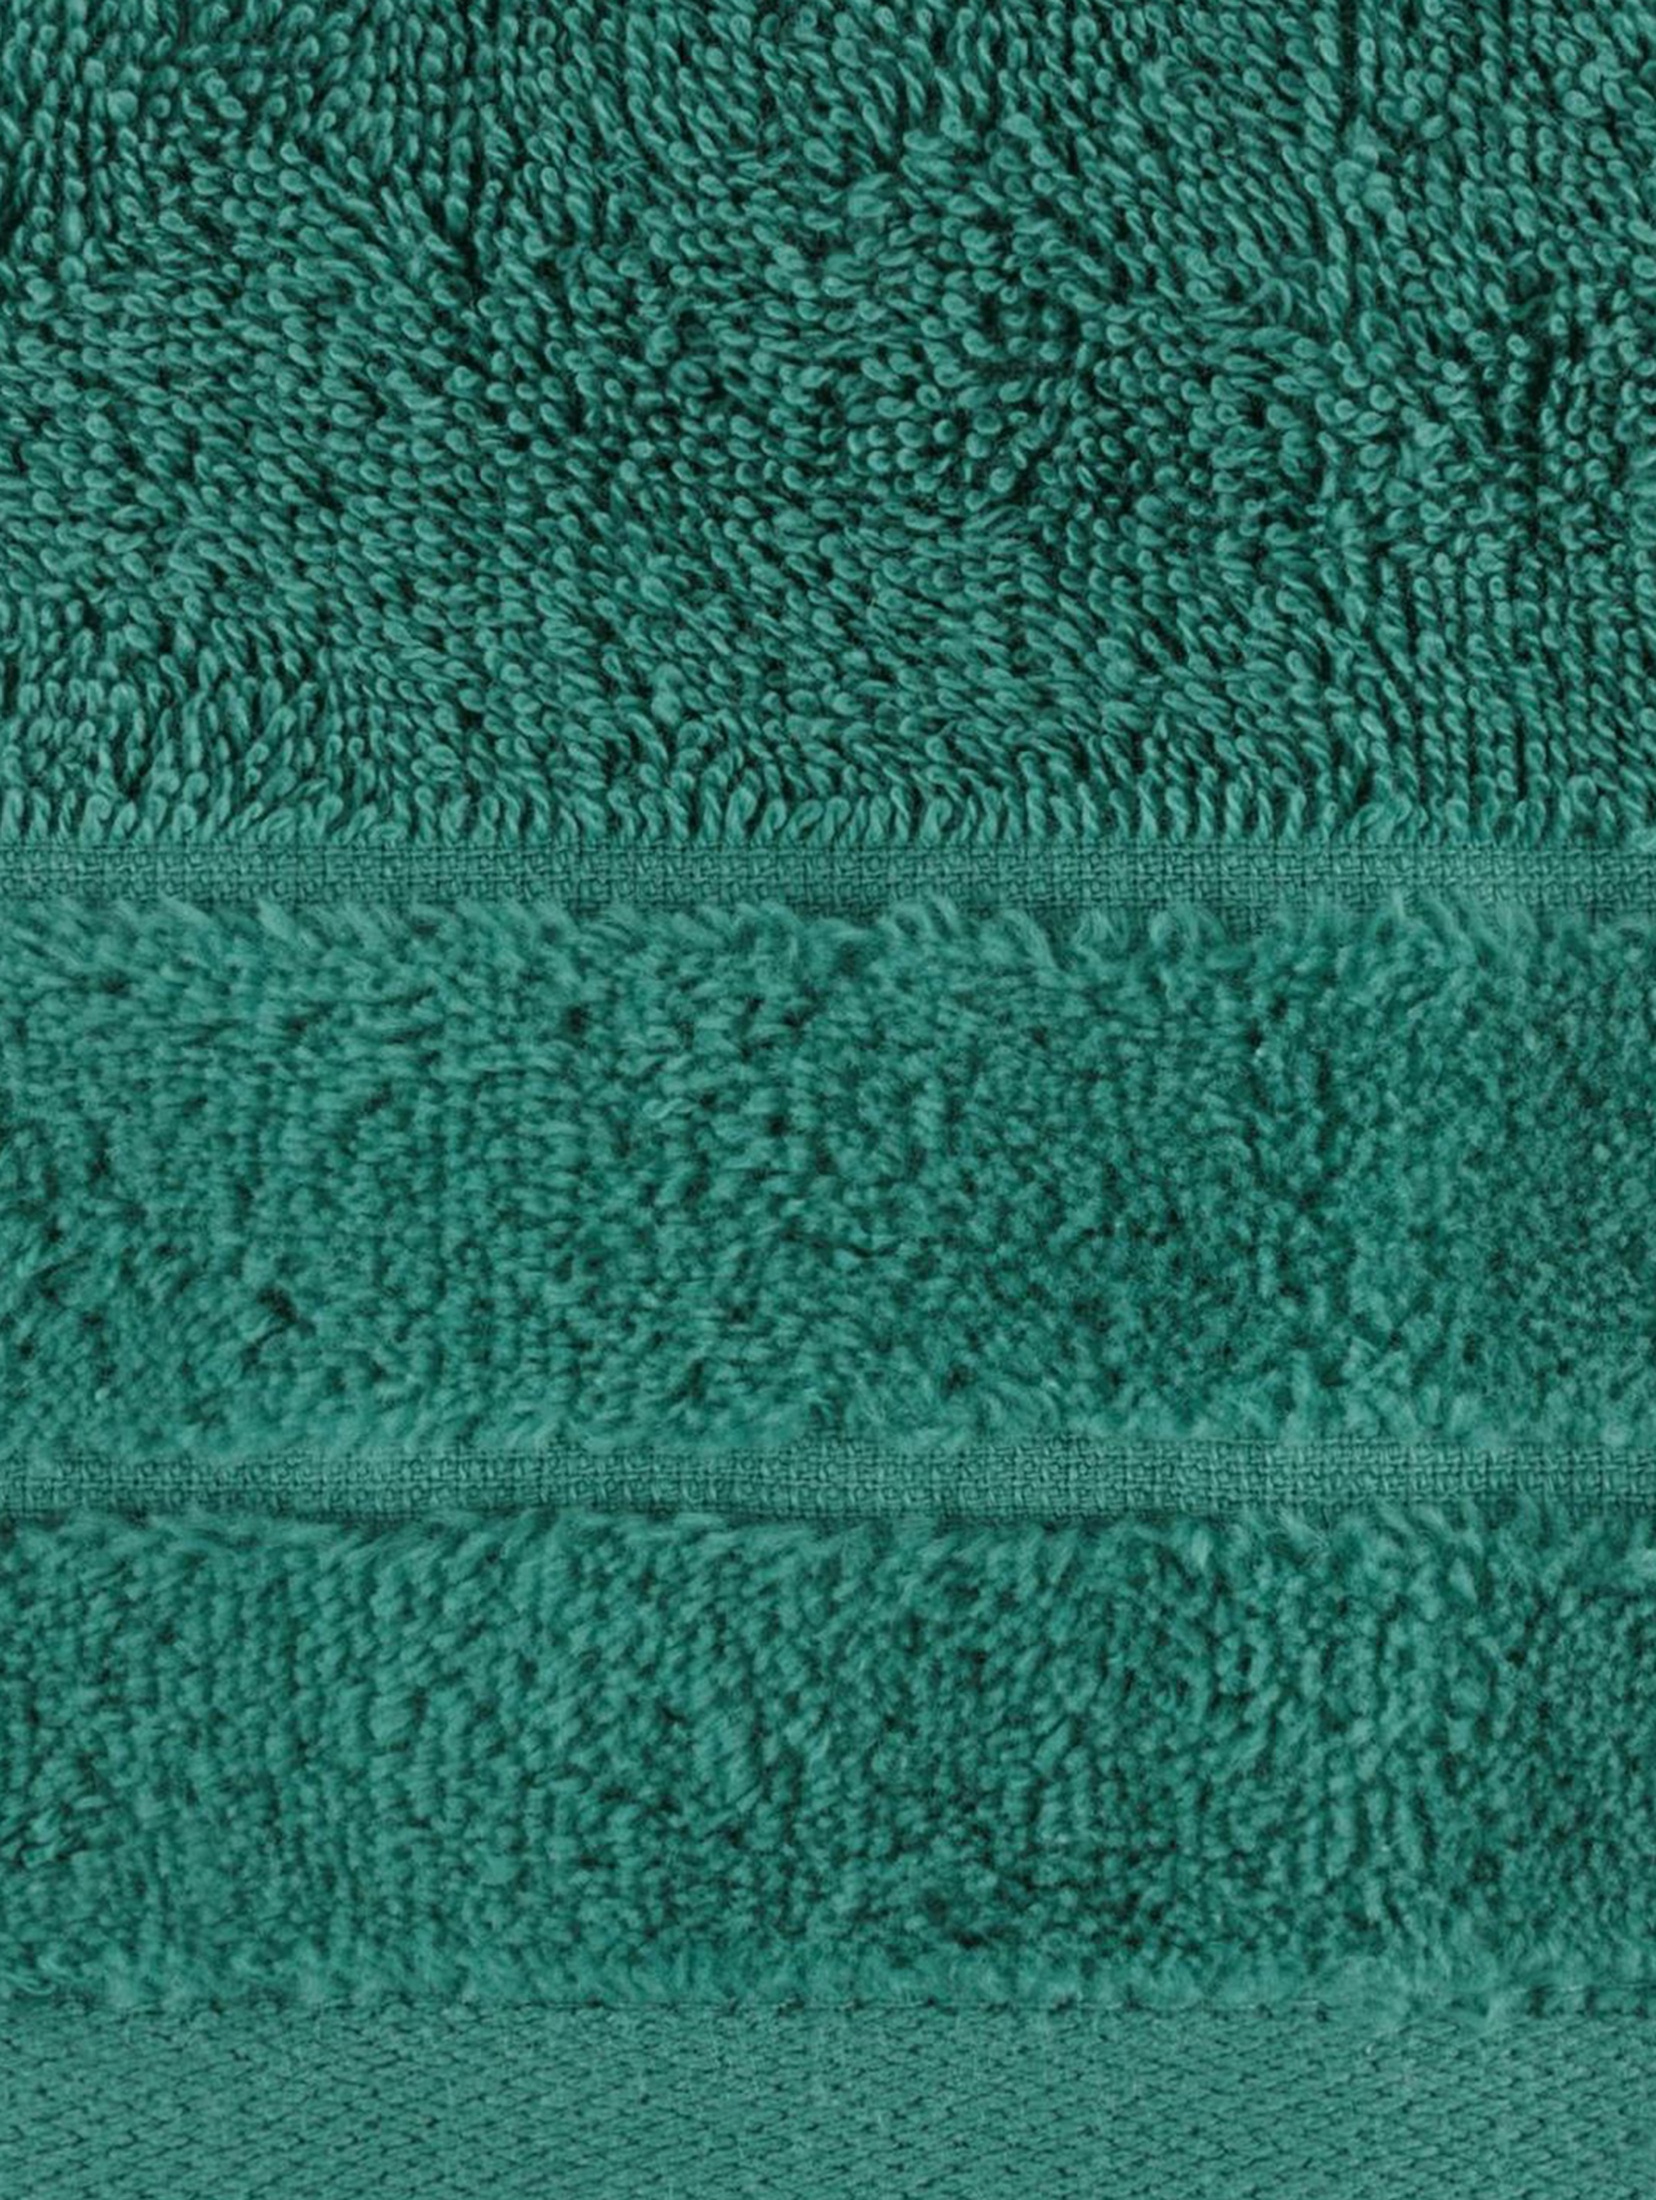 Ręcznik damla (13) 50x90 cm butelkowy zielony